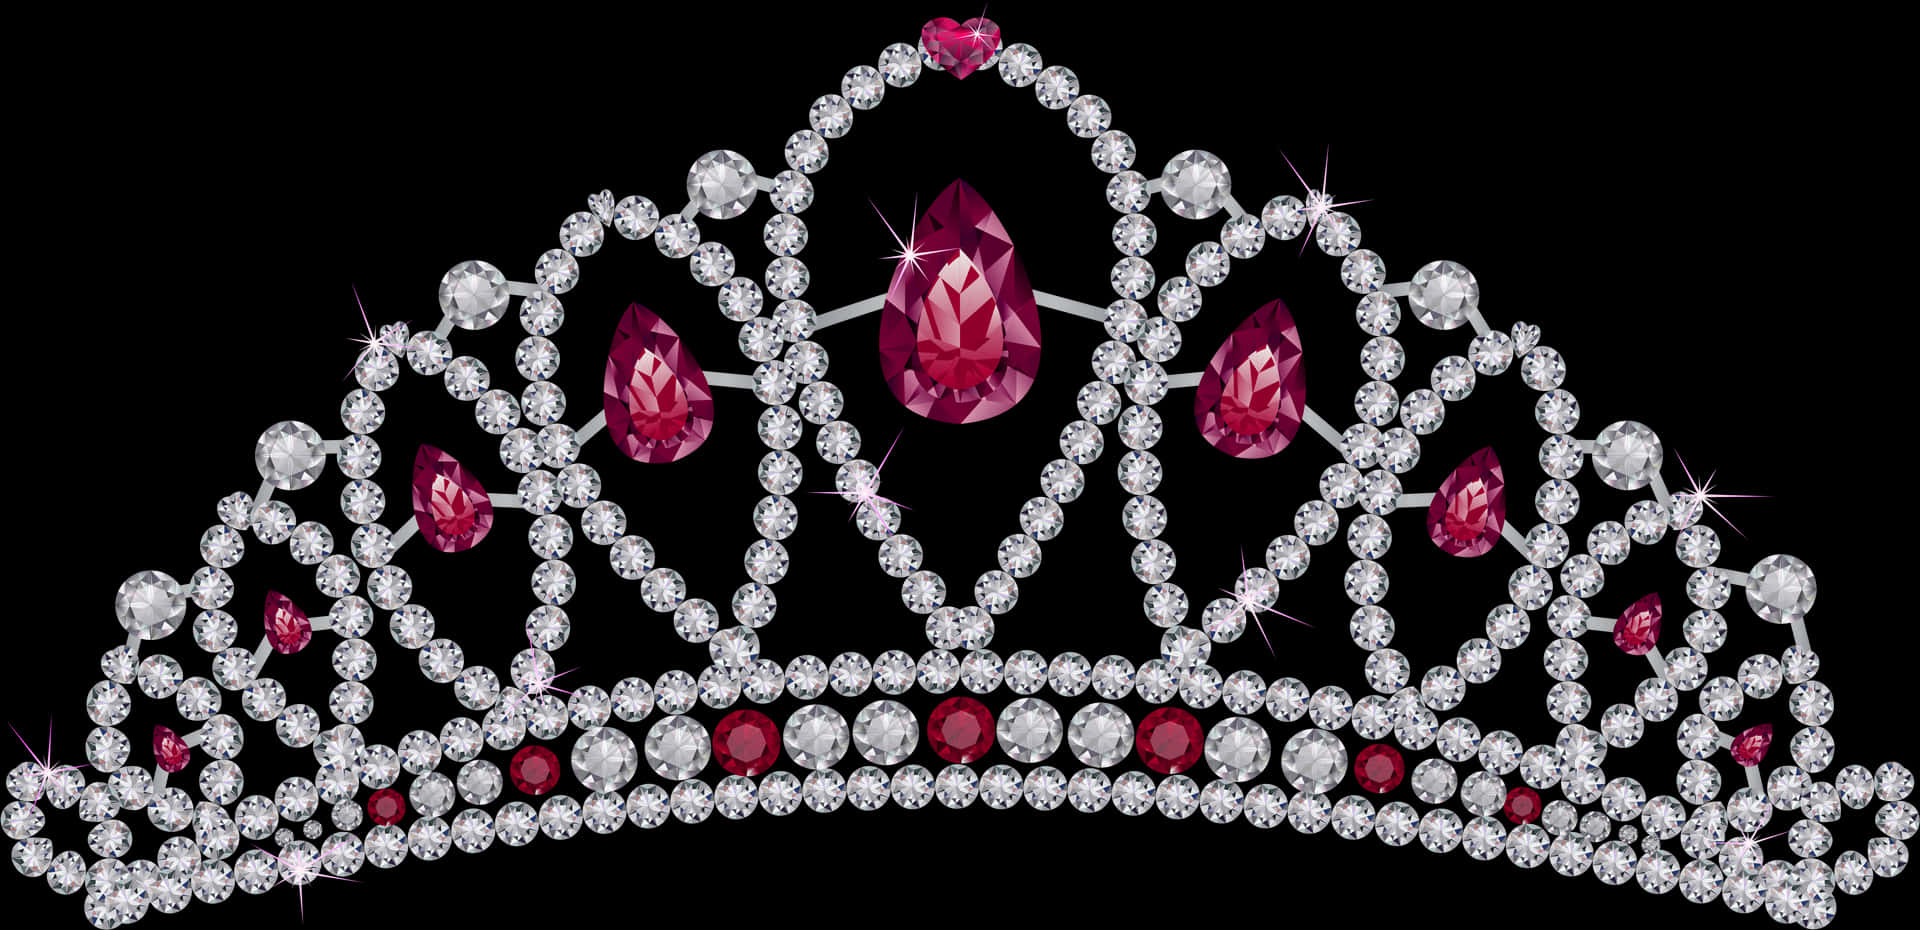 Sparkling Gemstone Crown Illustration PNG image